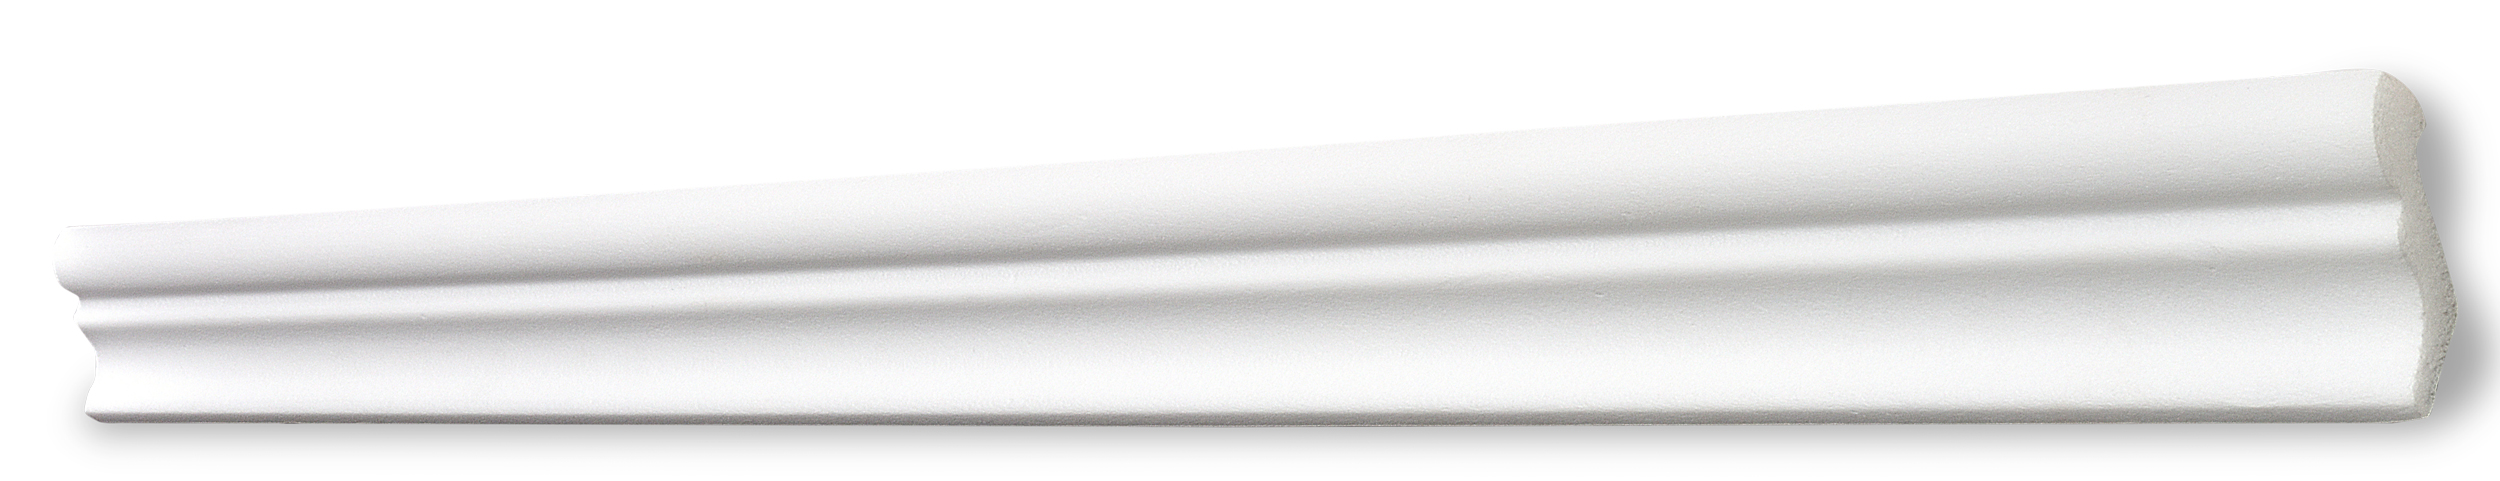 Decosa Zierprofil F35 (Stella), weiß, 35 x 32 mm, Länge: 2 m